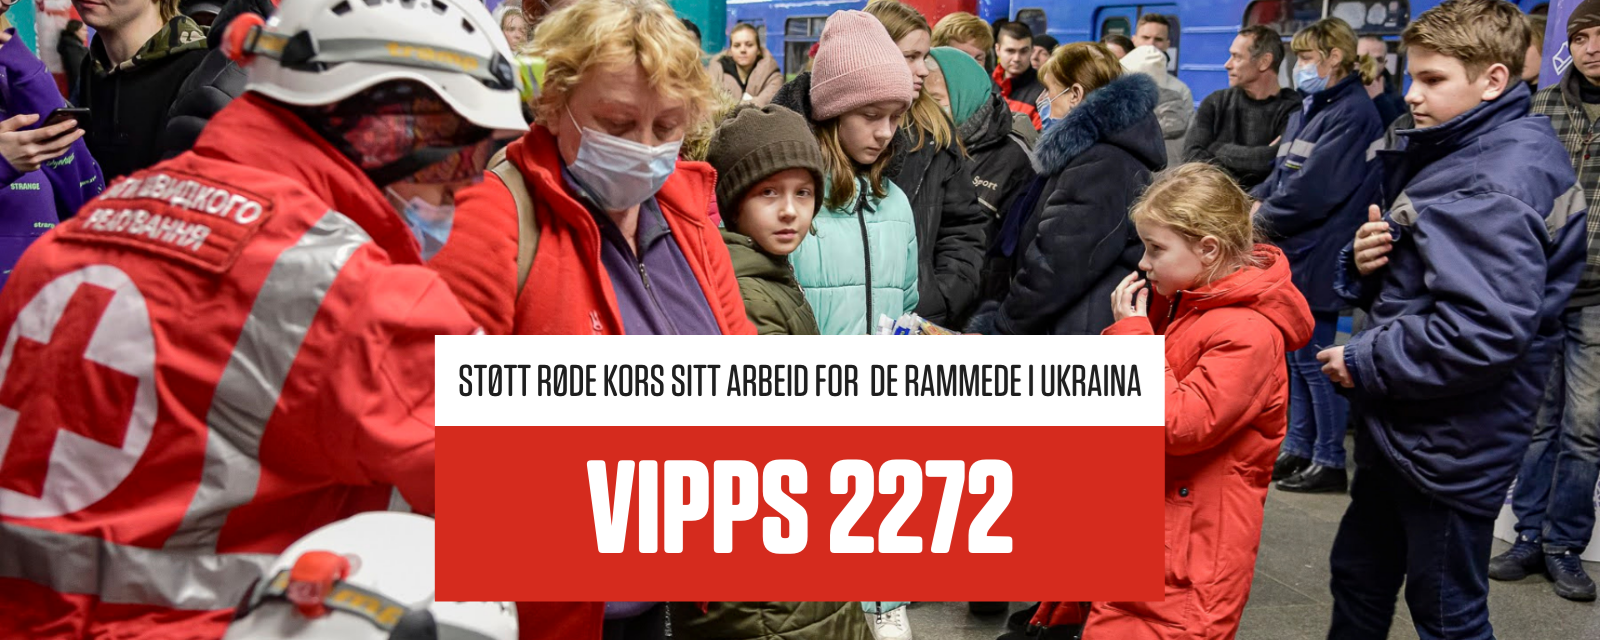 ukrainske flyktninger får nødhjelp av røde kors